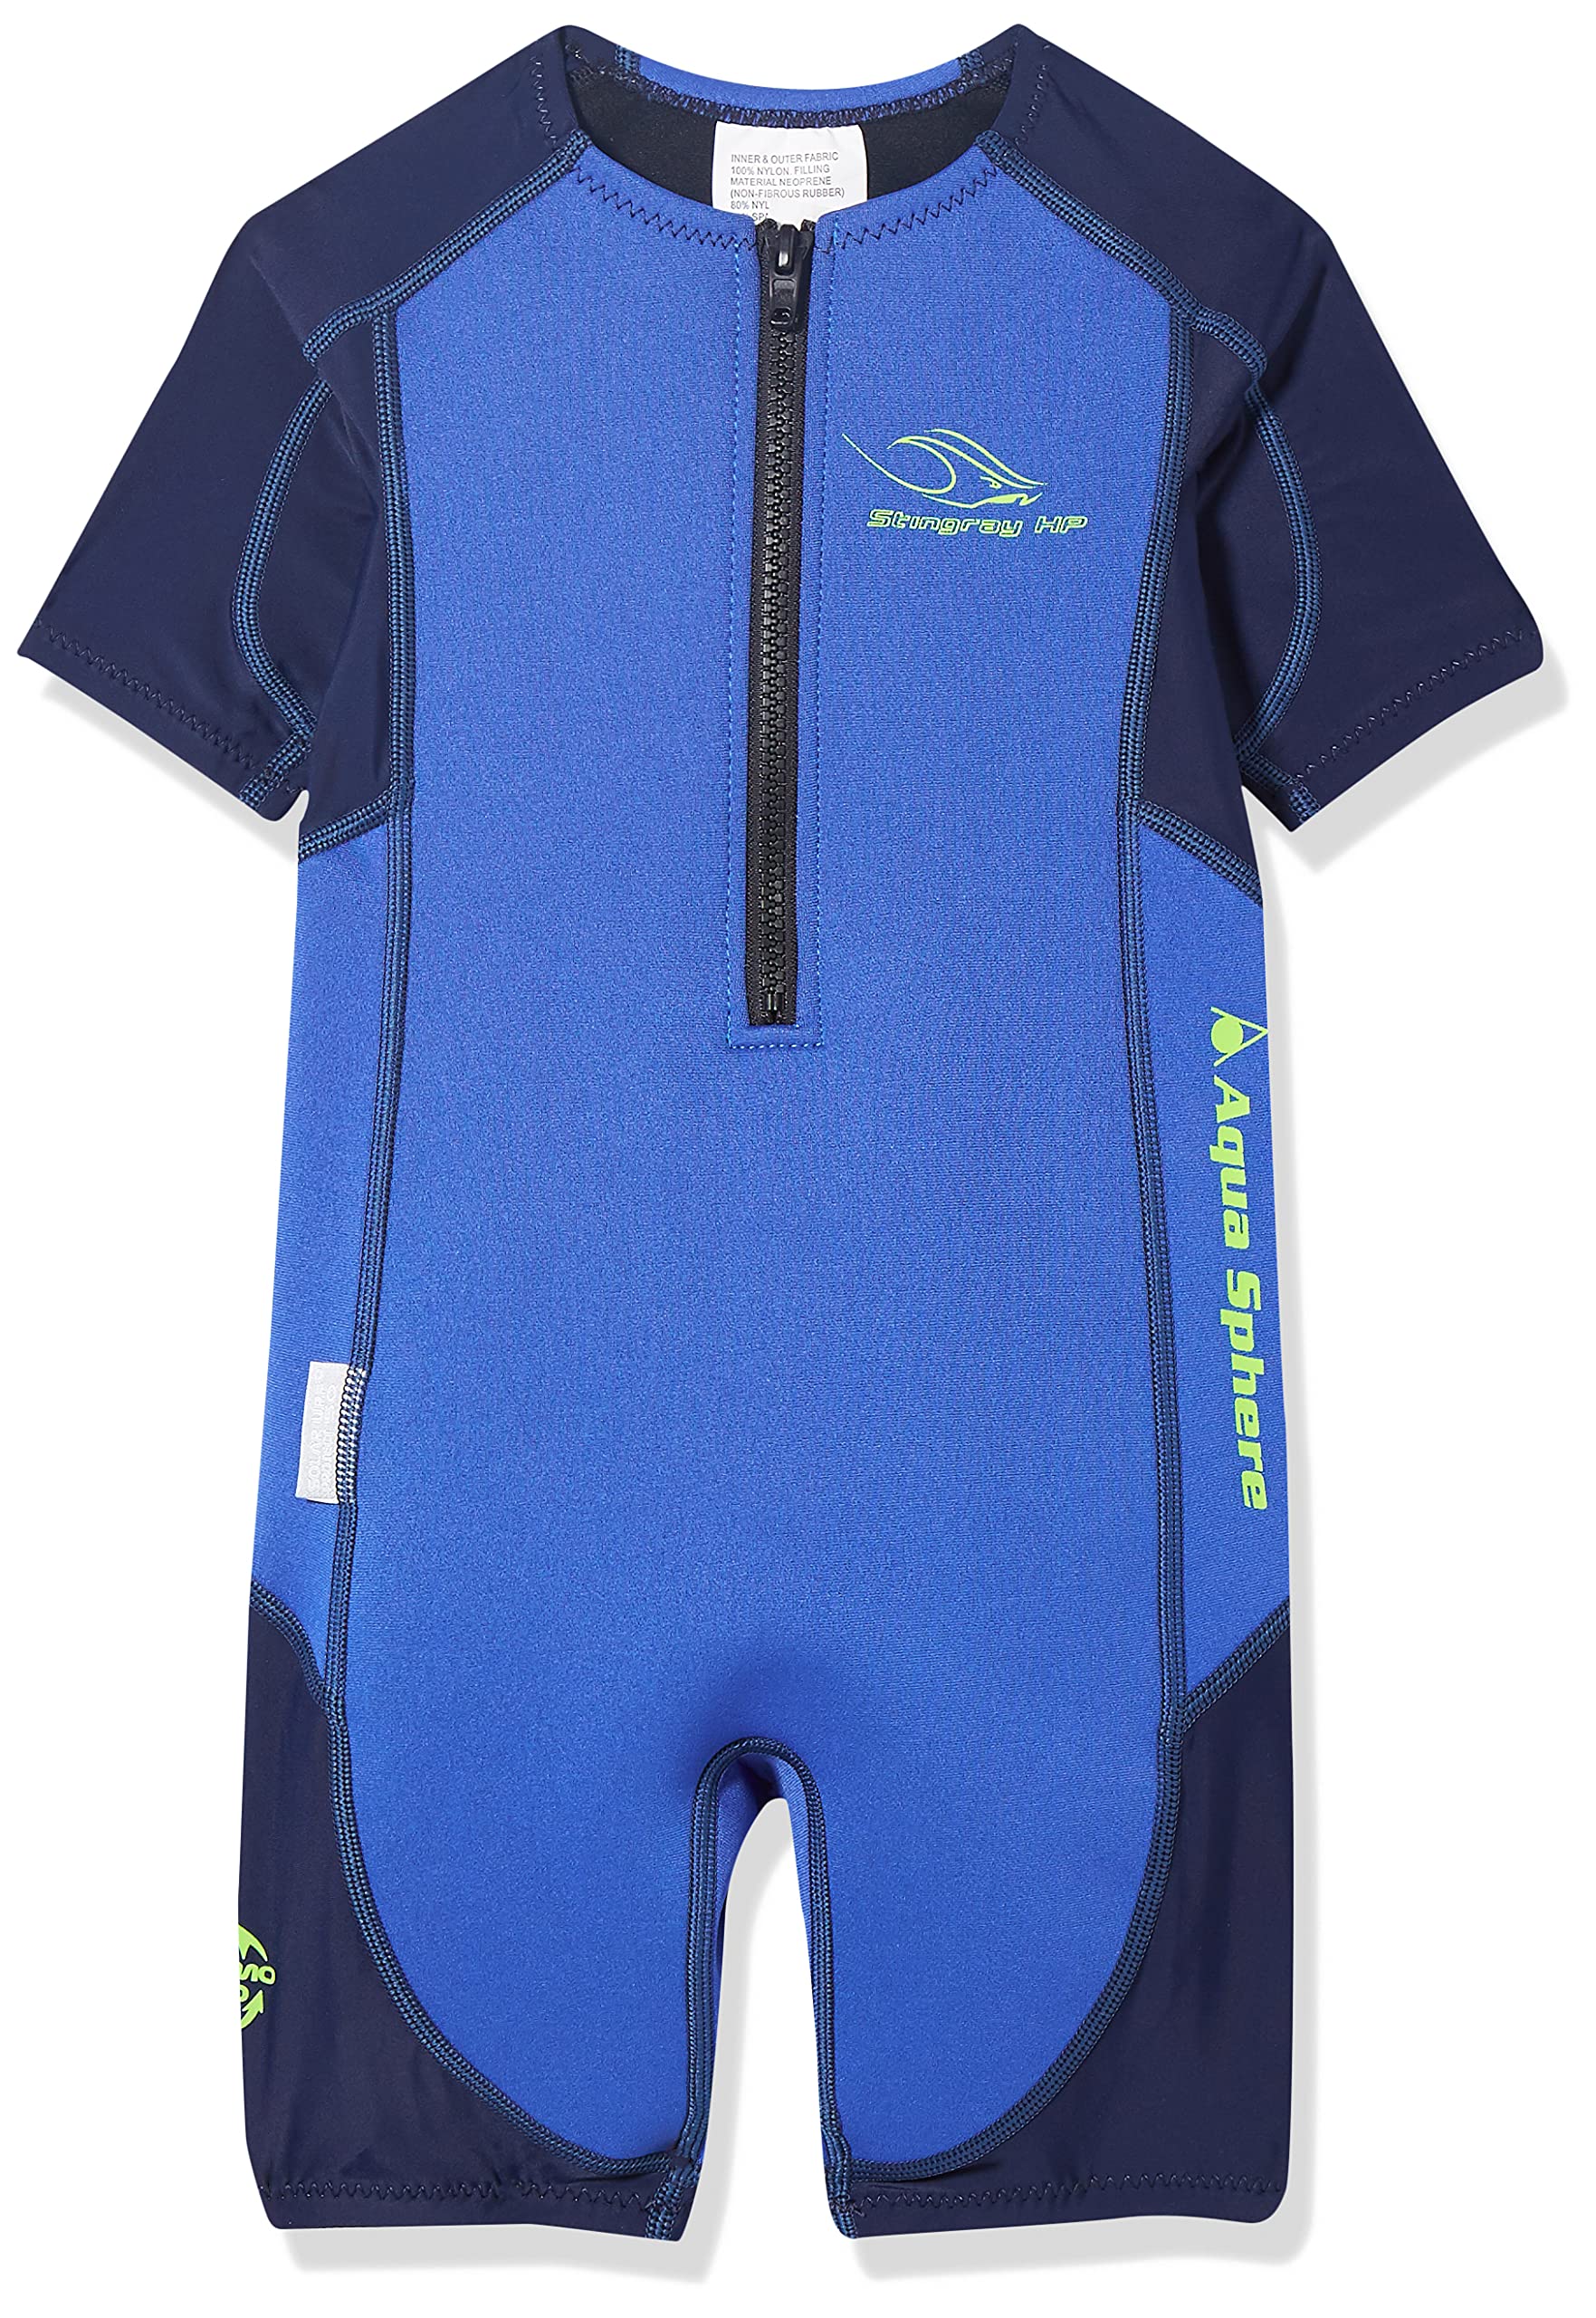 Aqua Sphere Unisex Jugend Stingray Hp Short Sleeve Wetsuit, Blau/Navy, 104 (Herstellergröße: 2 Jahre)